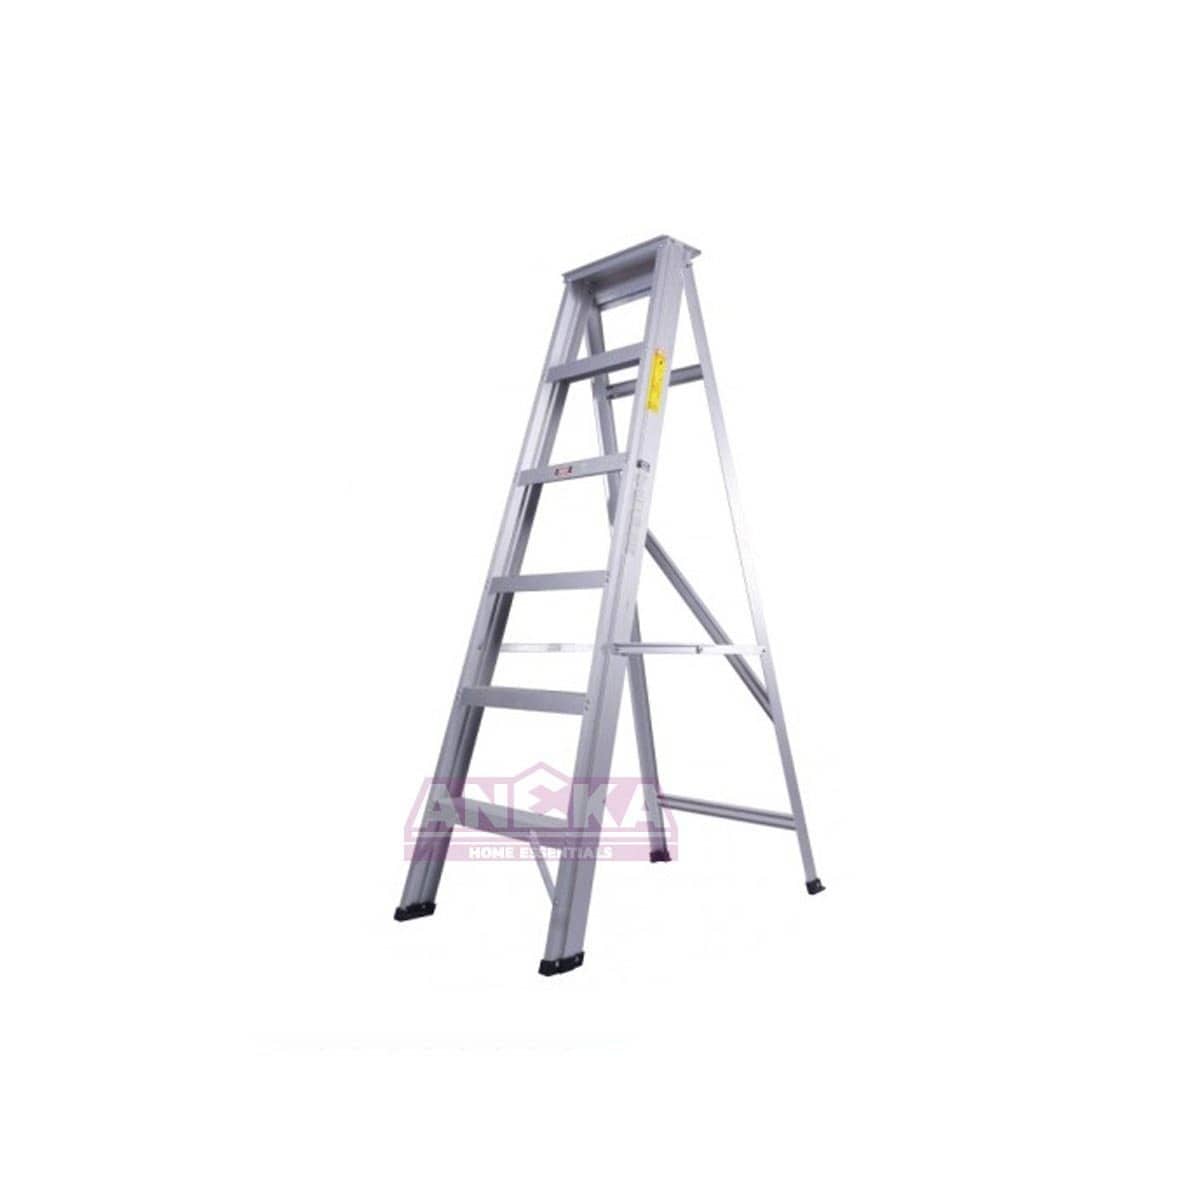 SUMO KING Heavy Duty Single Sided Ladder (10 STEPS)